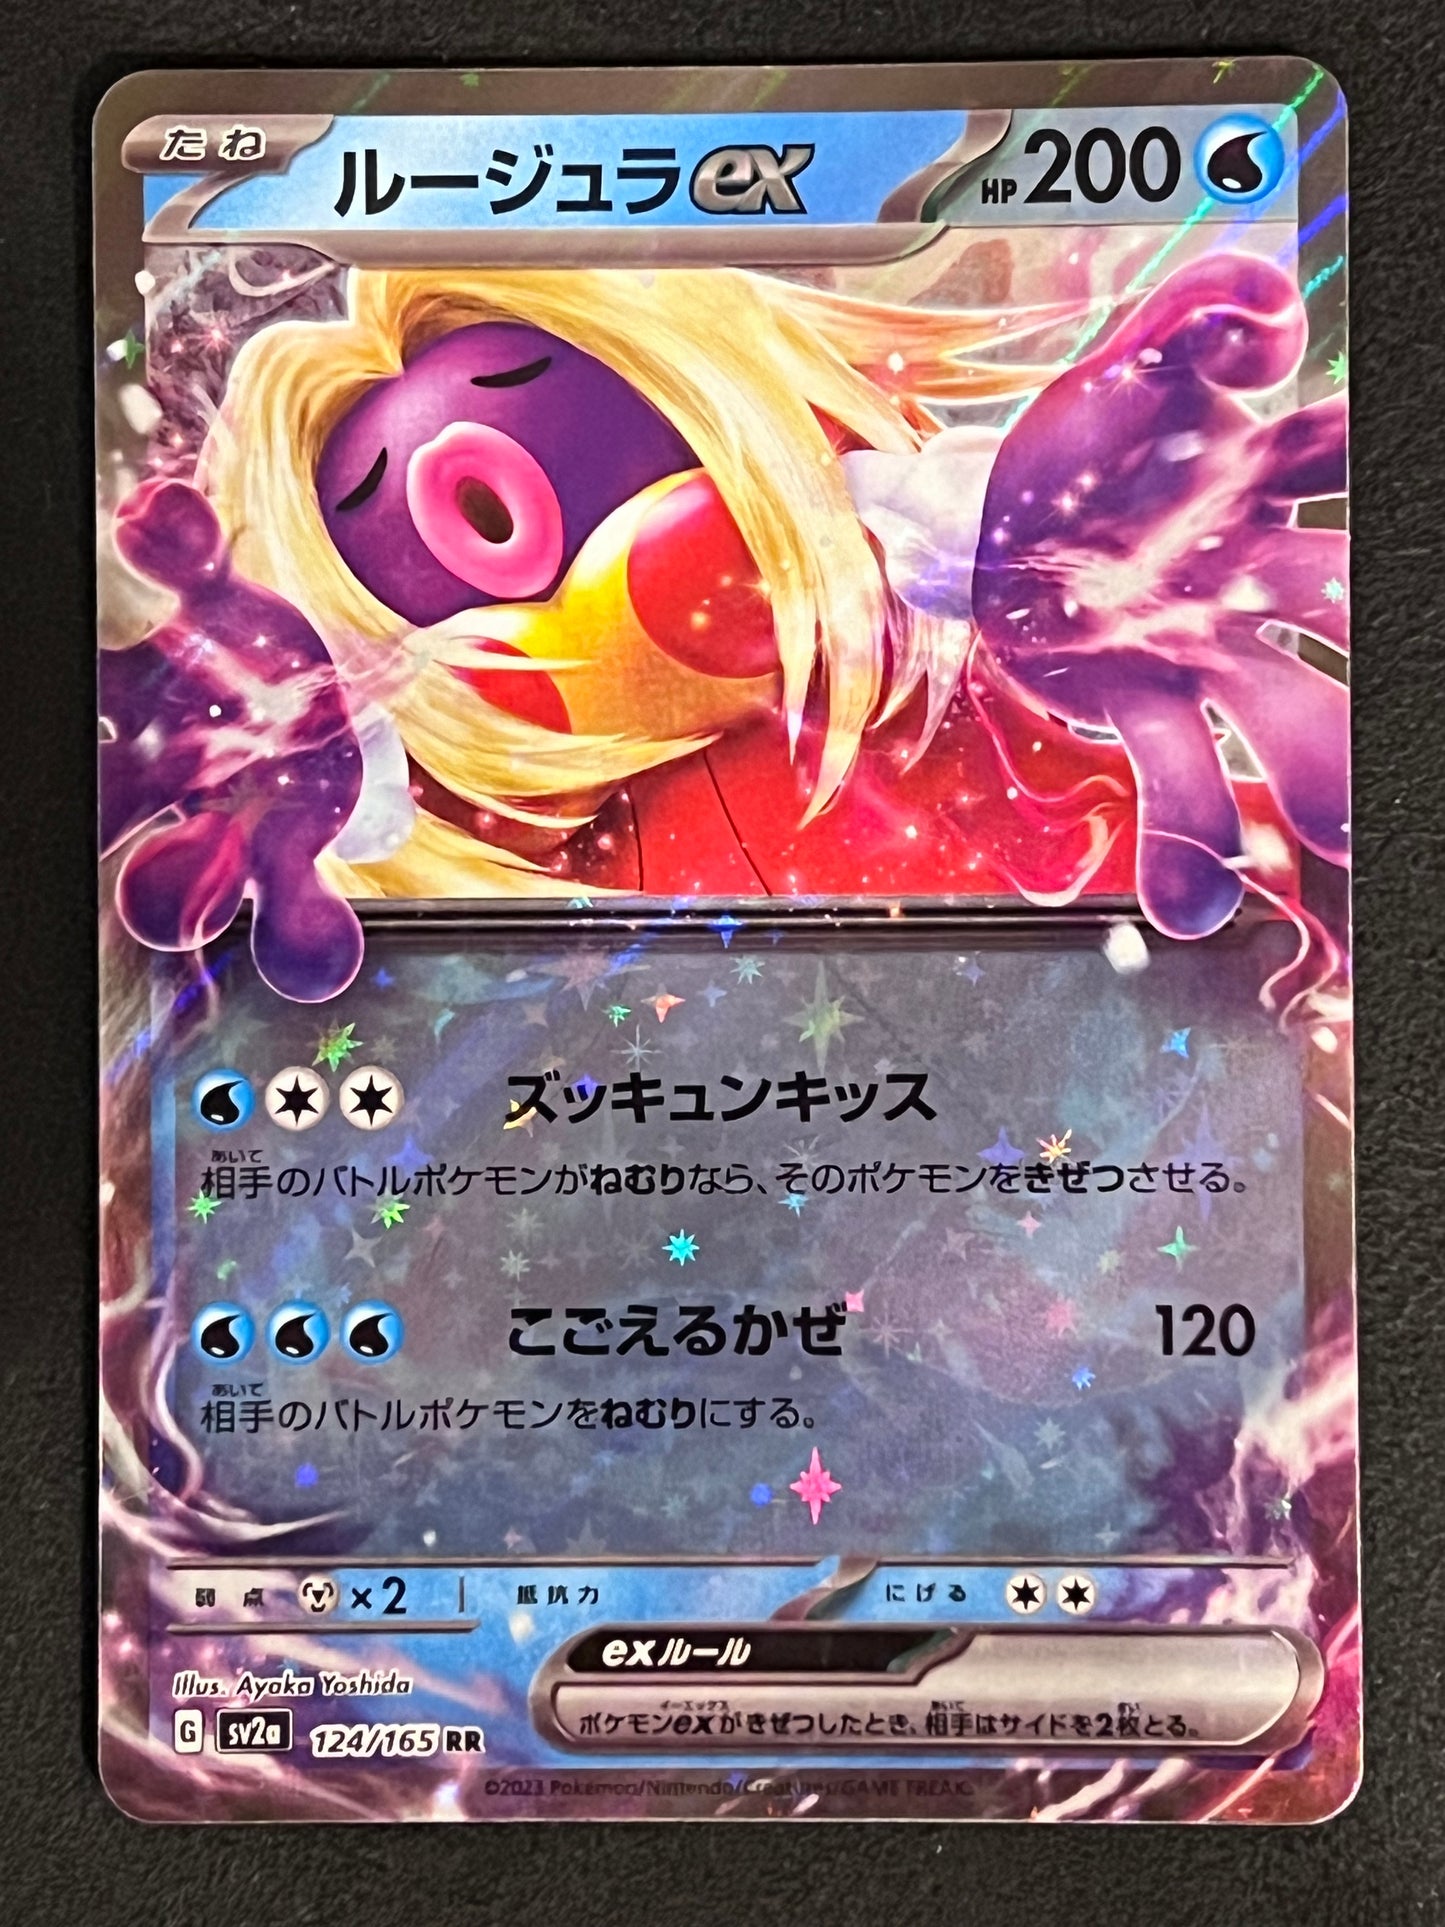 Jynx ex - 124/165 Sv2a Pokémon Card 151 Double Rare Holo ex